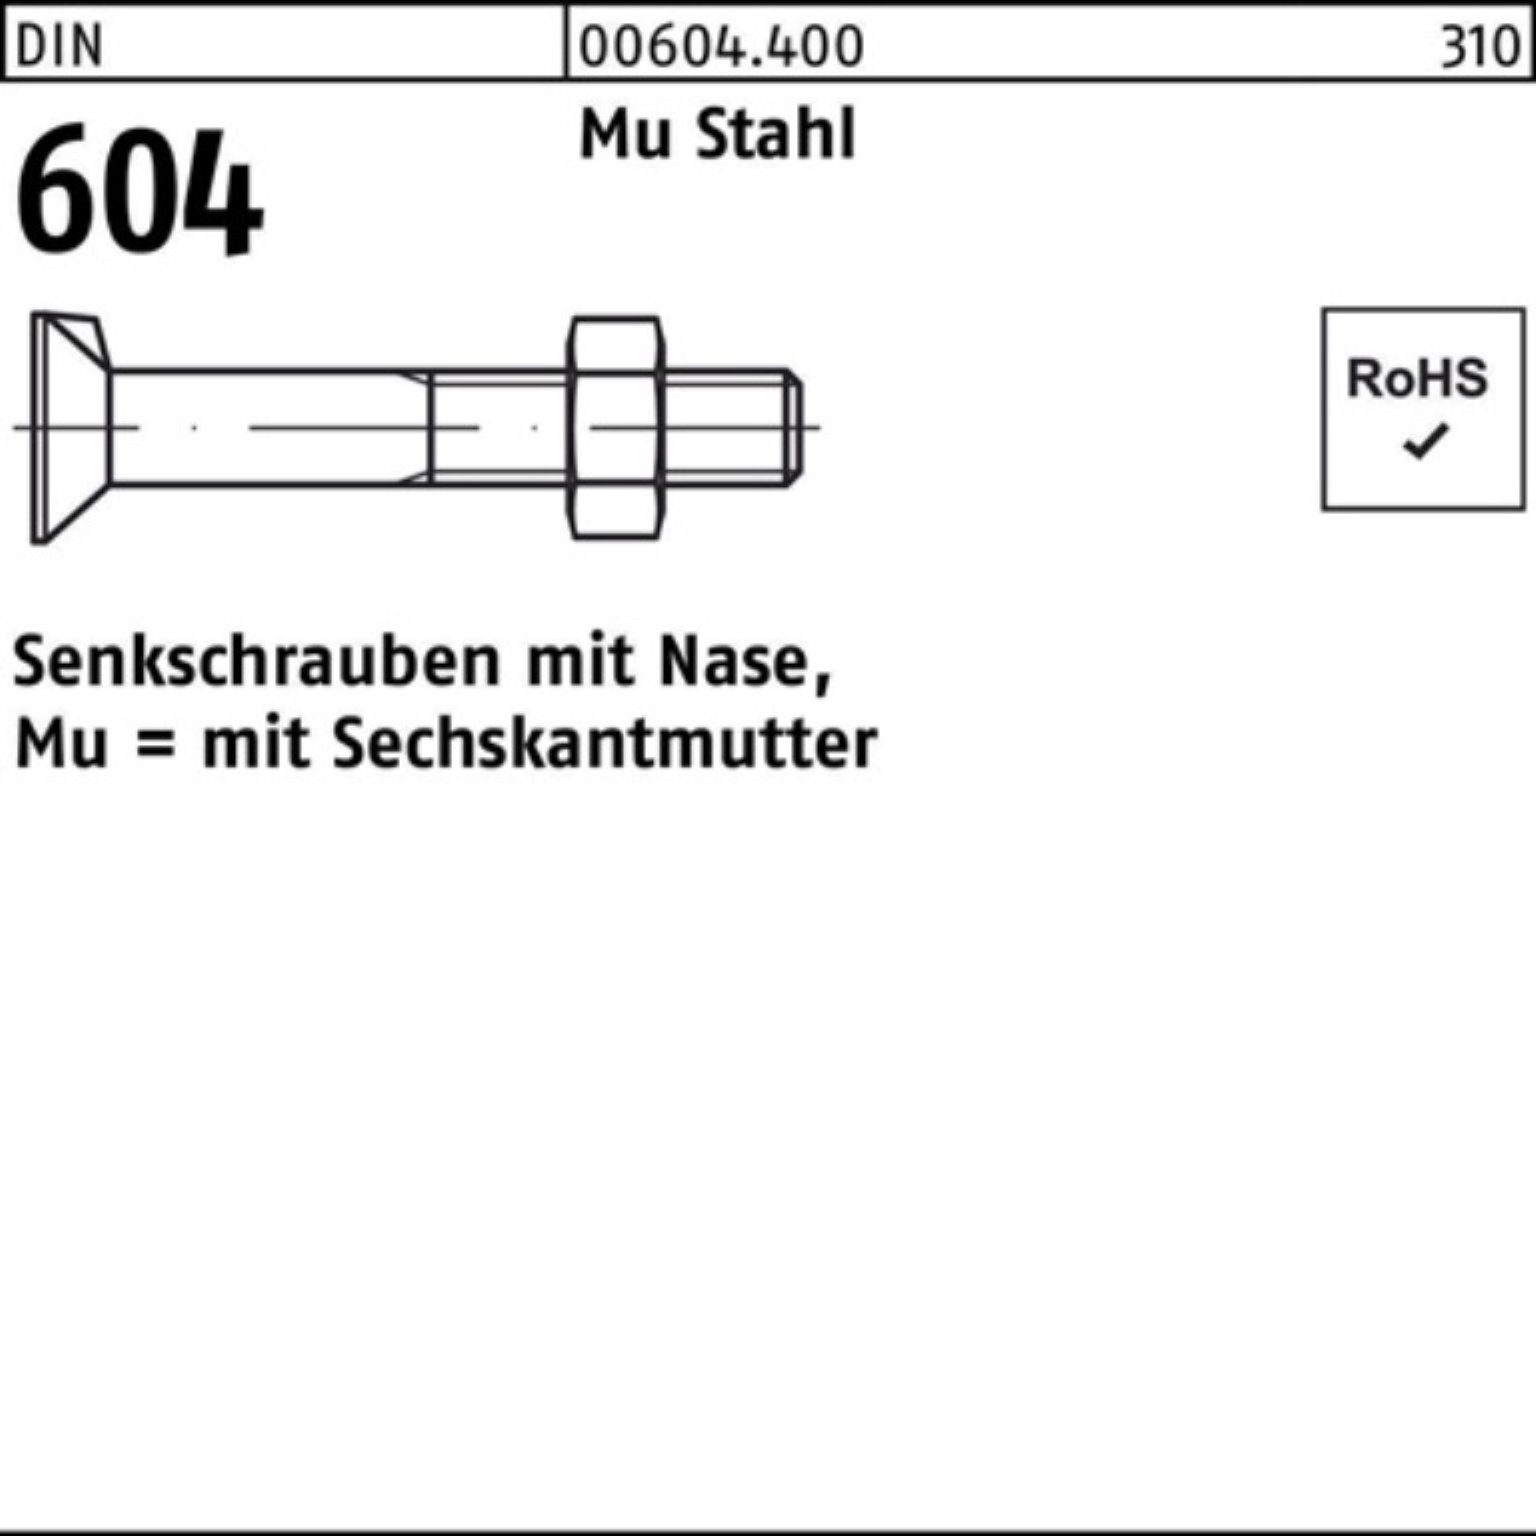 50 M6x Senkschraube Pack DIN Reyher Mu Stahl 604 4.6 25 500er Nase/6-ktmutter Senkschraube